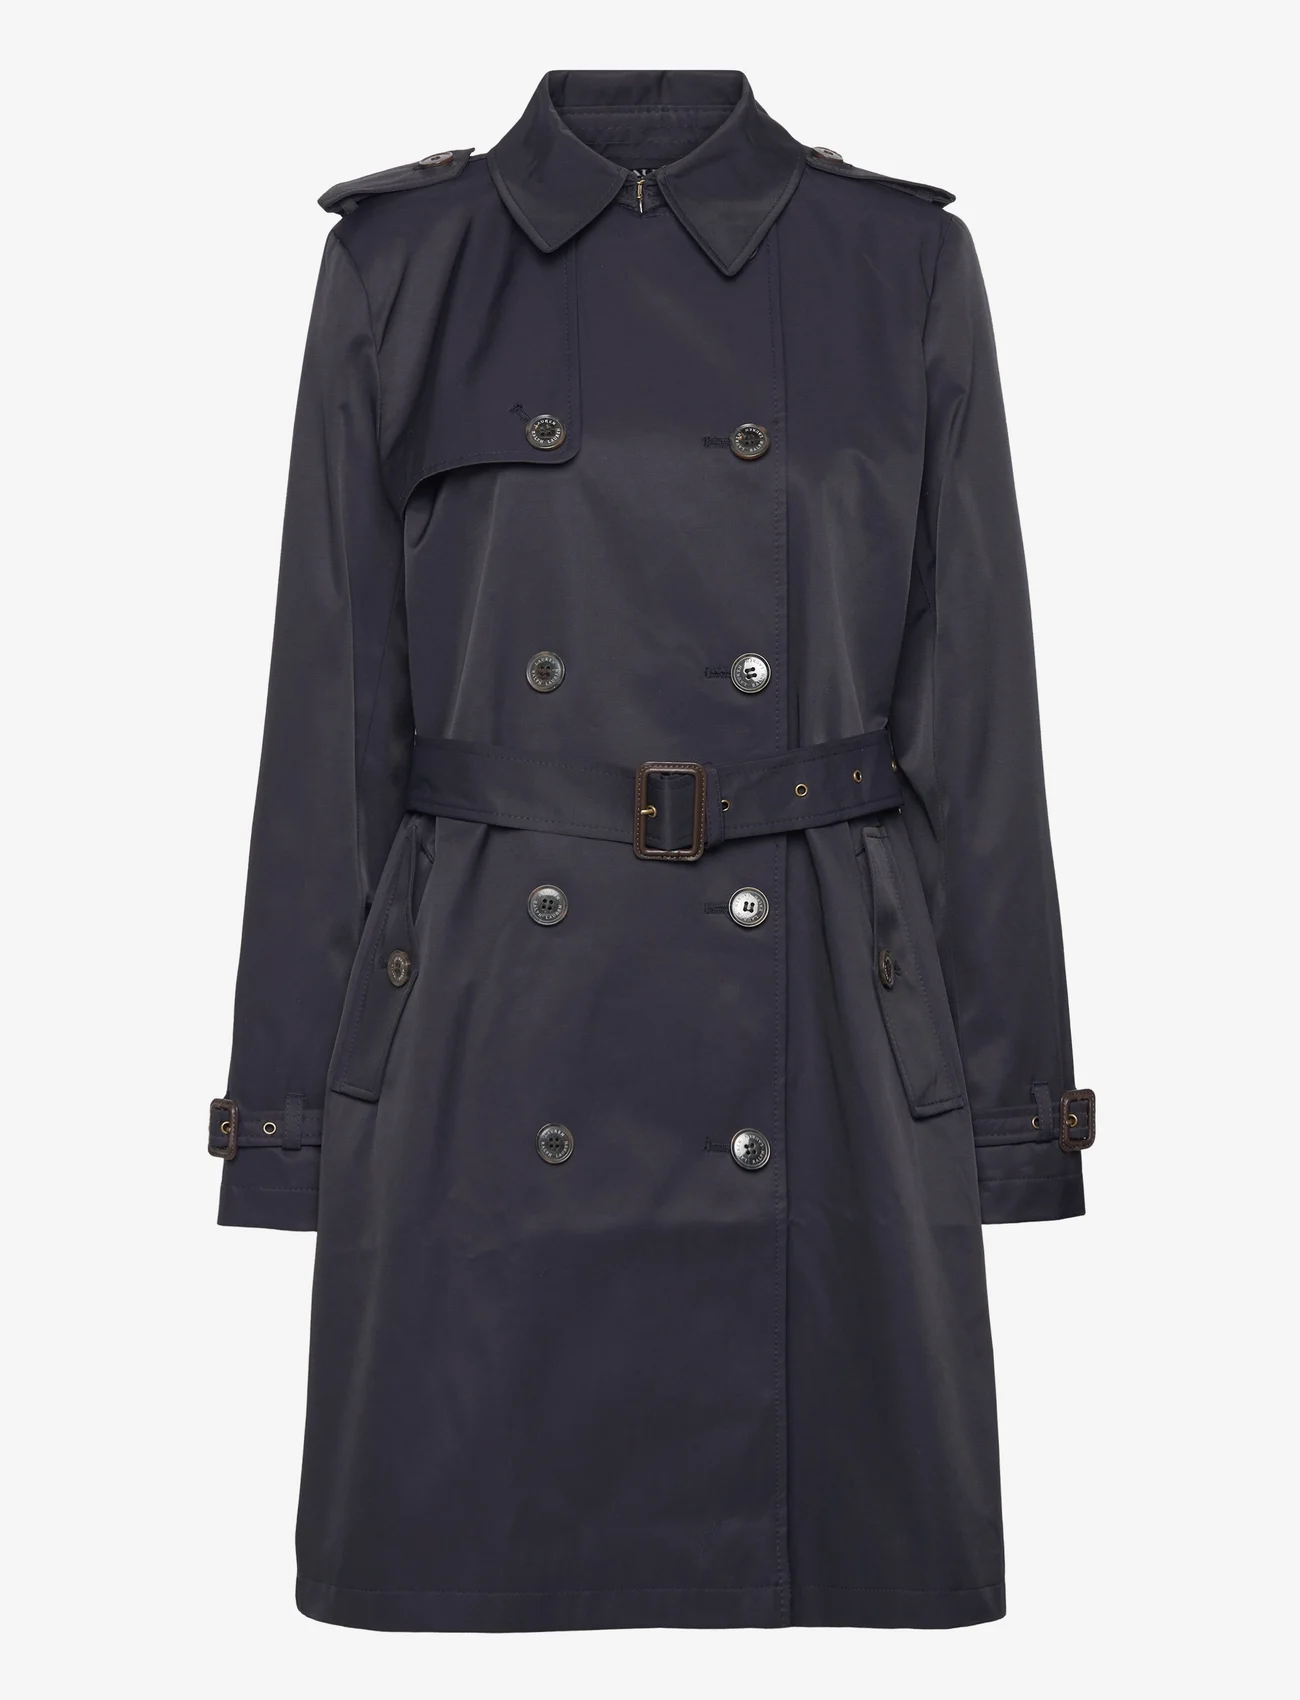 Lauren Ralph Lauren - Double-Breasted Cotton-Blend Trench Coat - spring coats - dk navy - 0